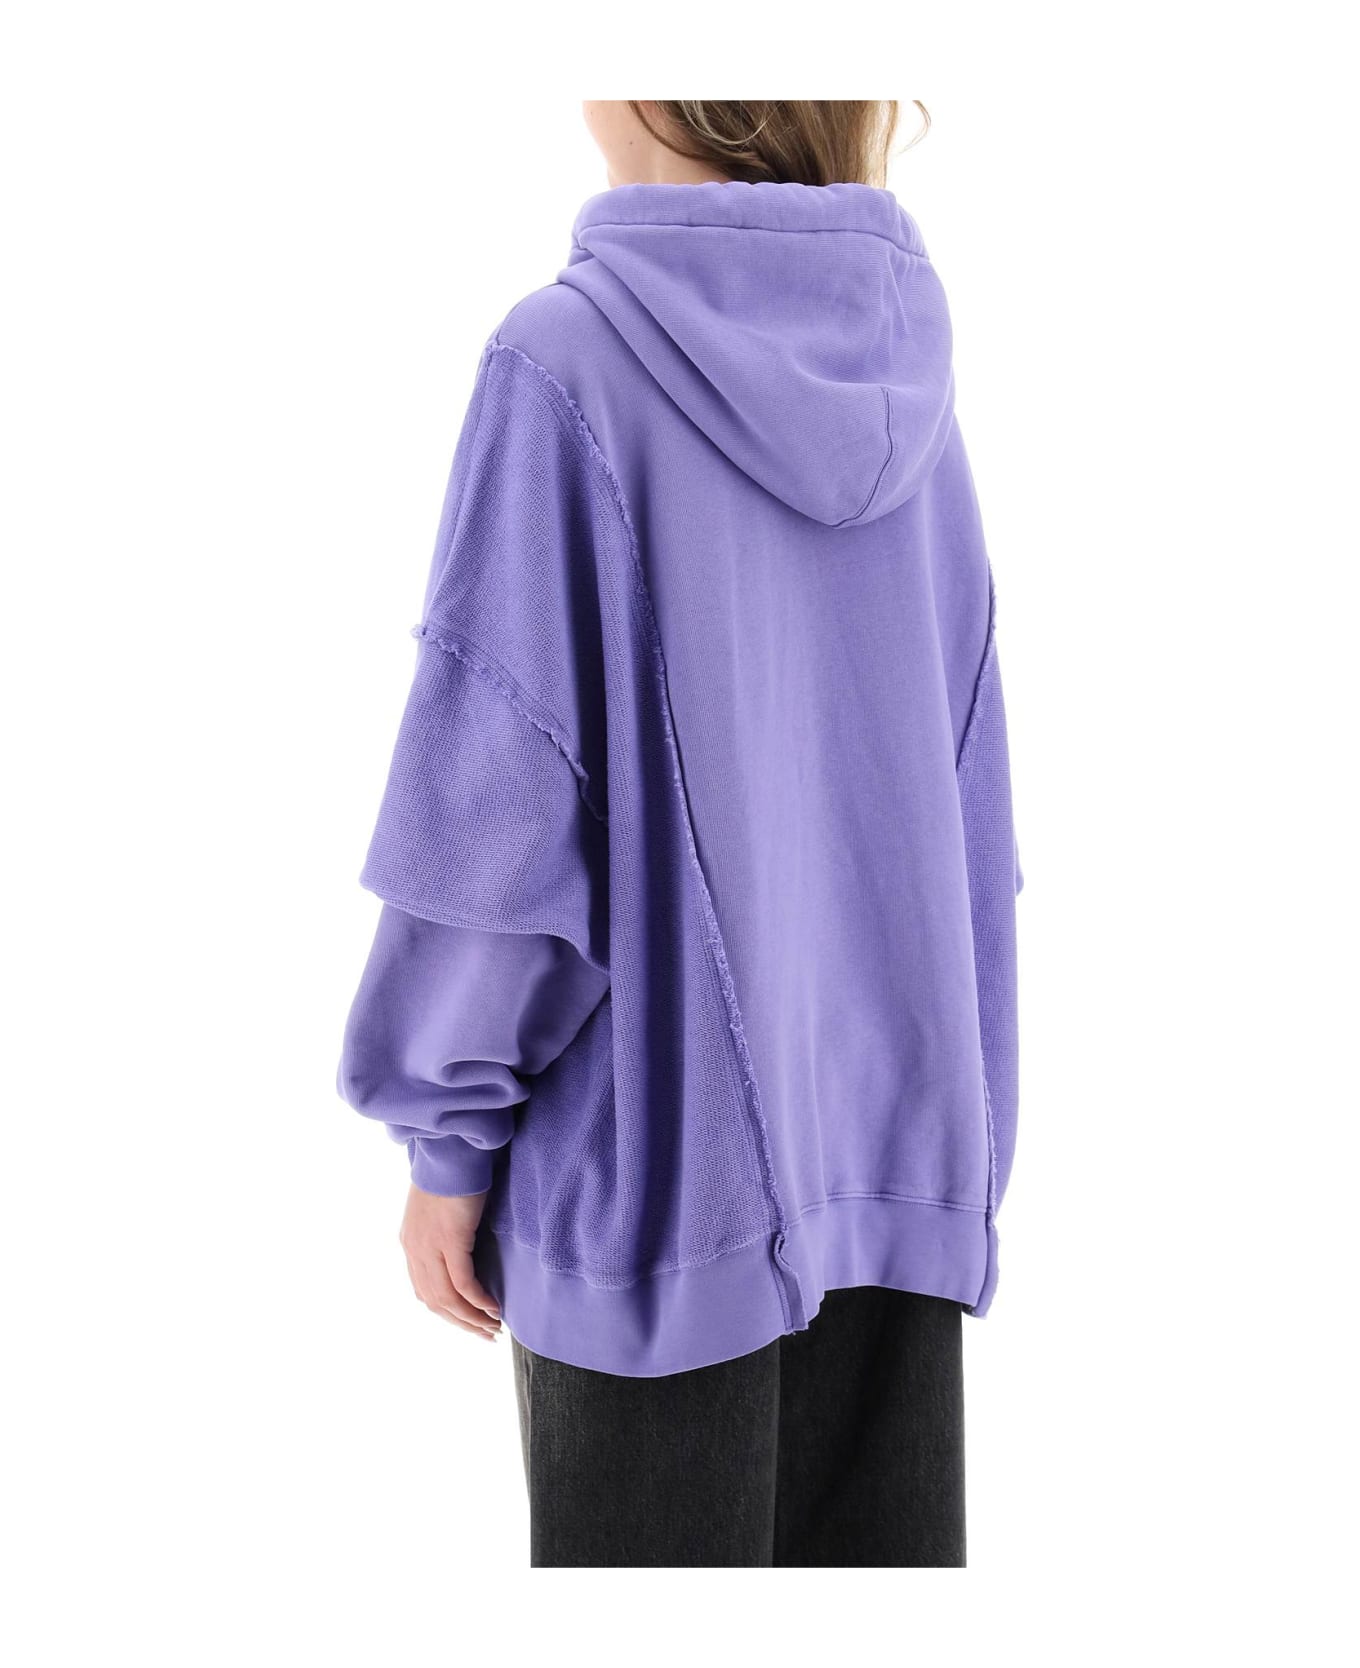 Khrisjoy Oversized Hooded Sweatshirt - WISTERIA (Purple)